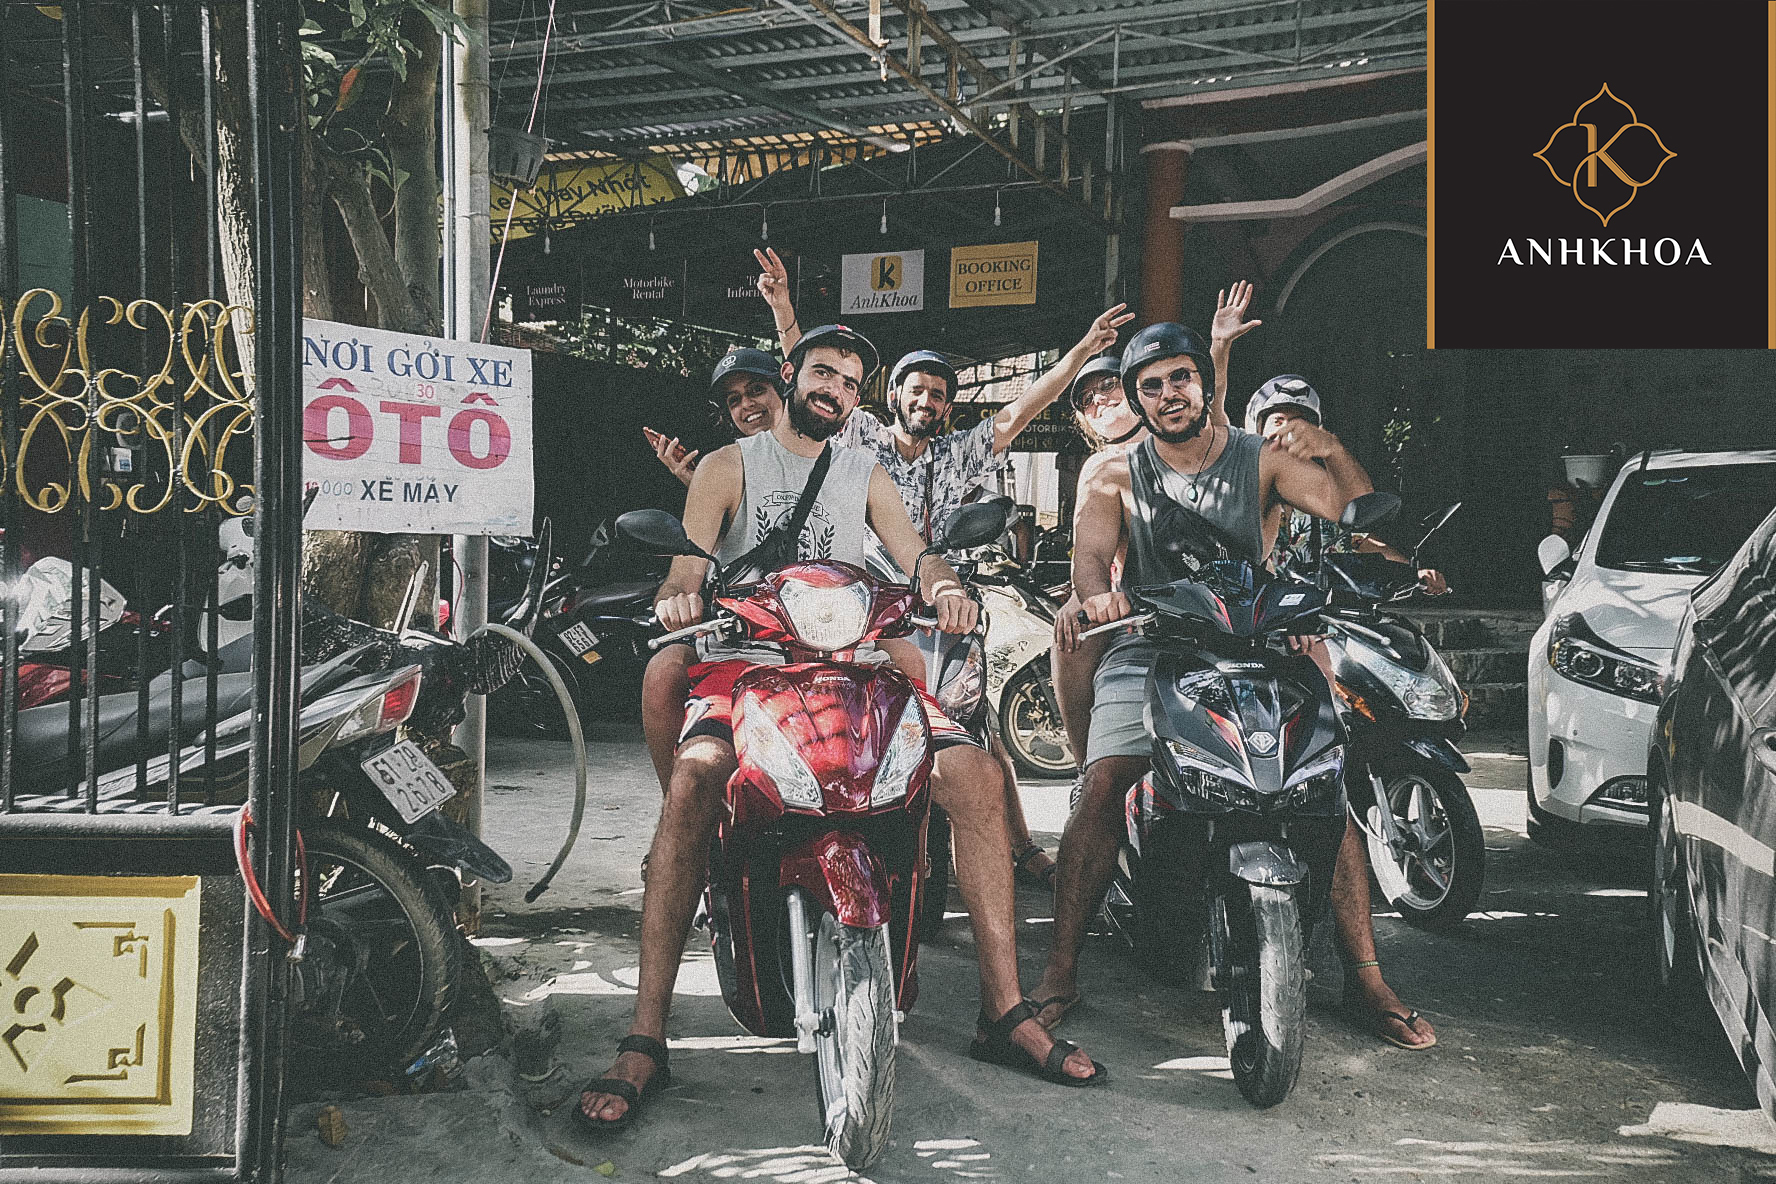 Motorbike Rental In Hoi An - Anh Khoa Hoi An Company